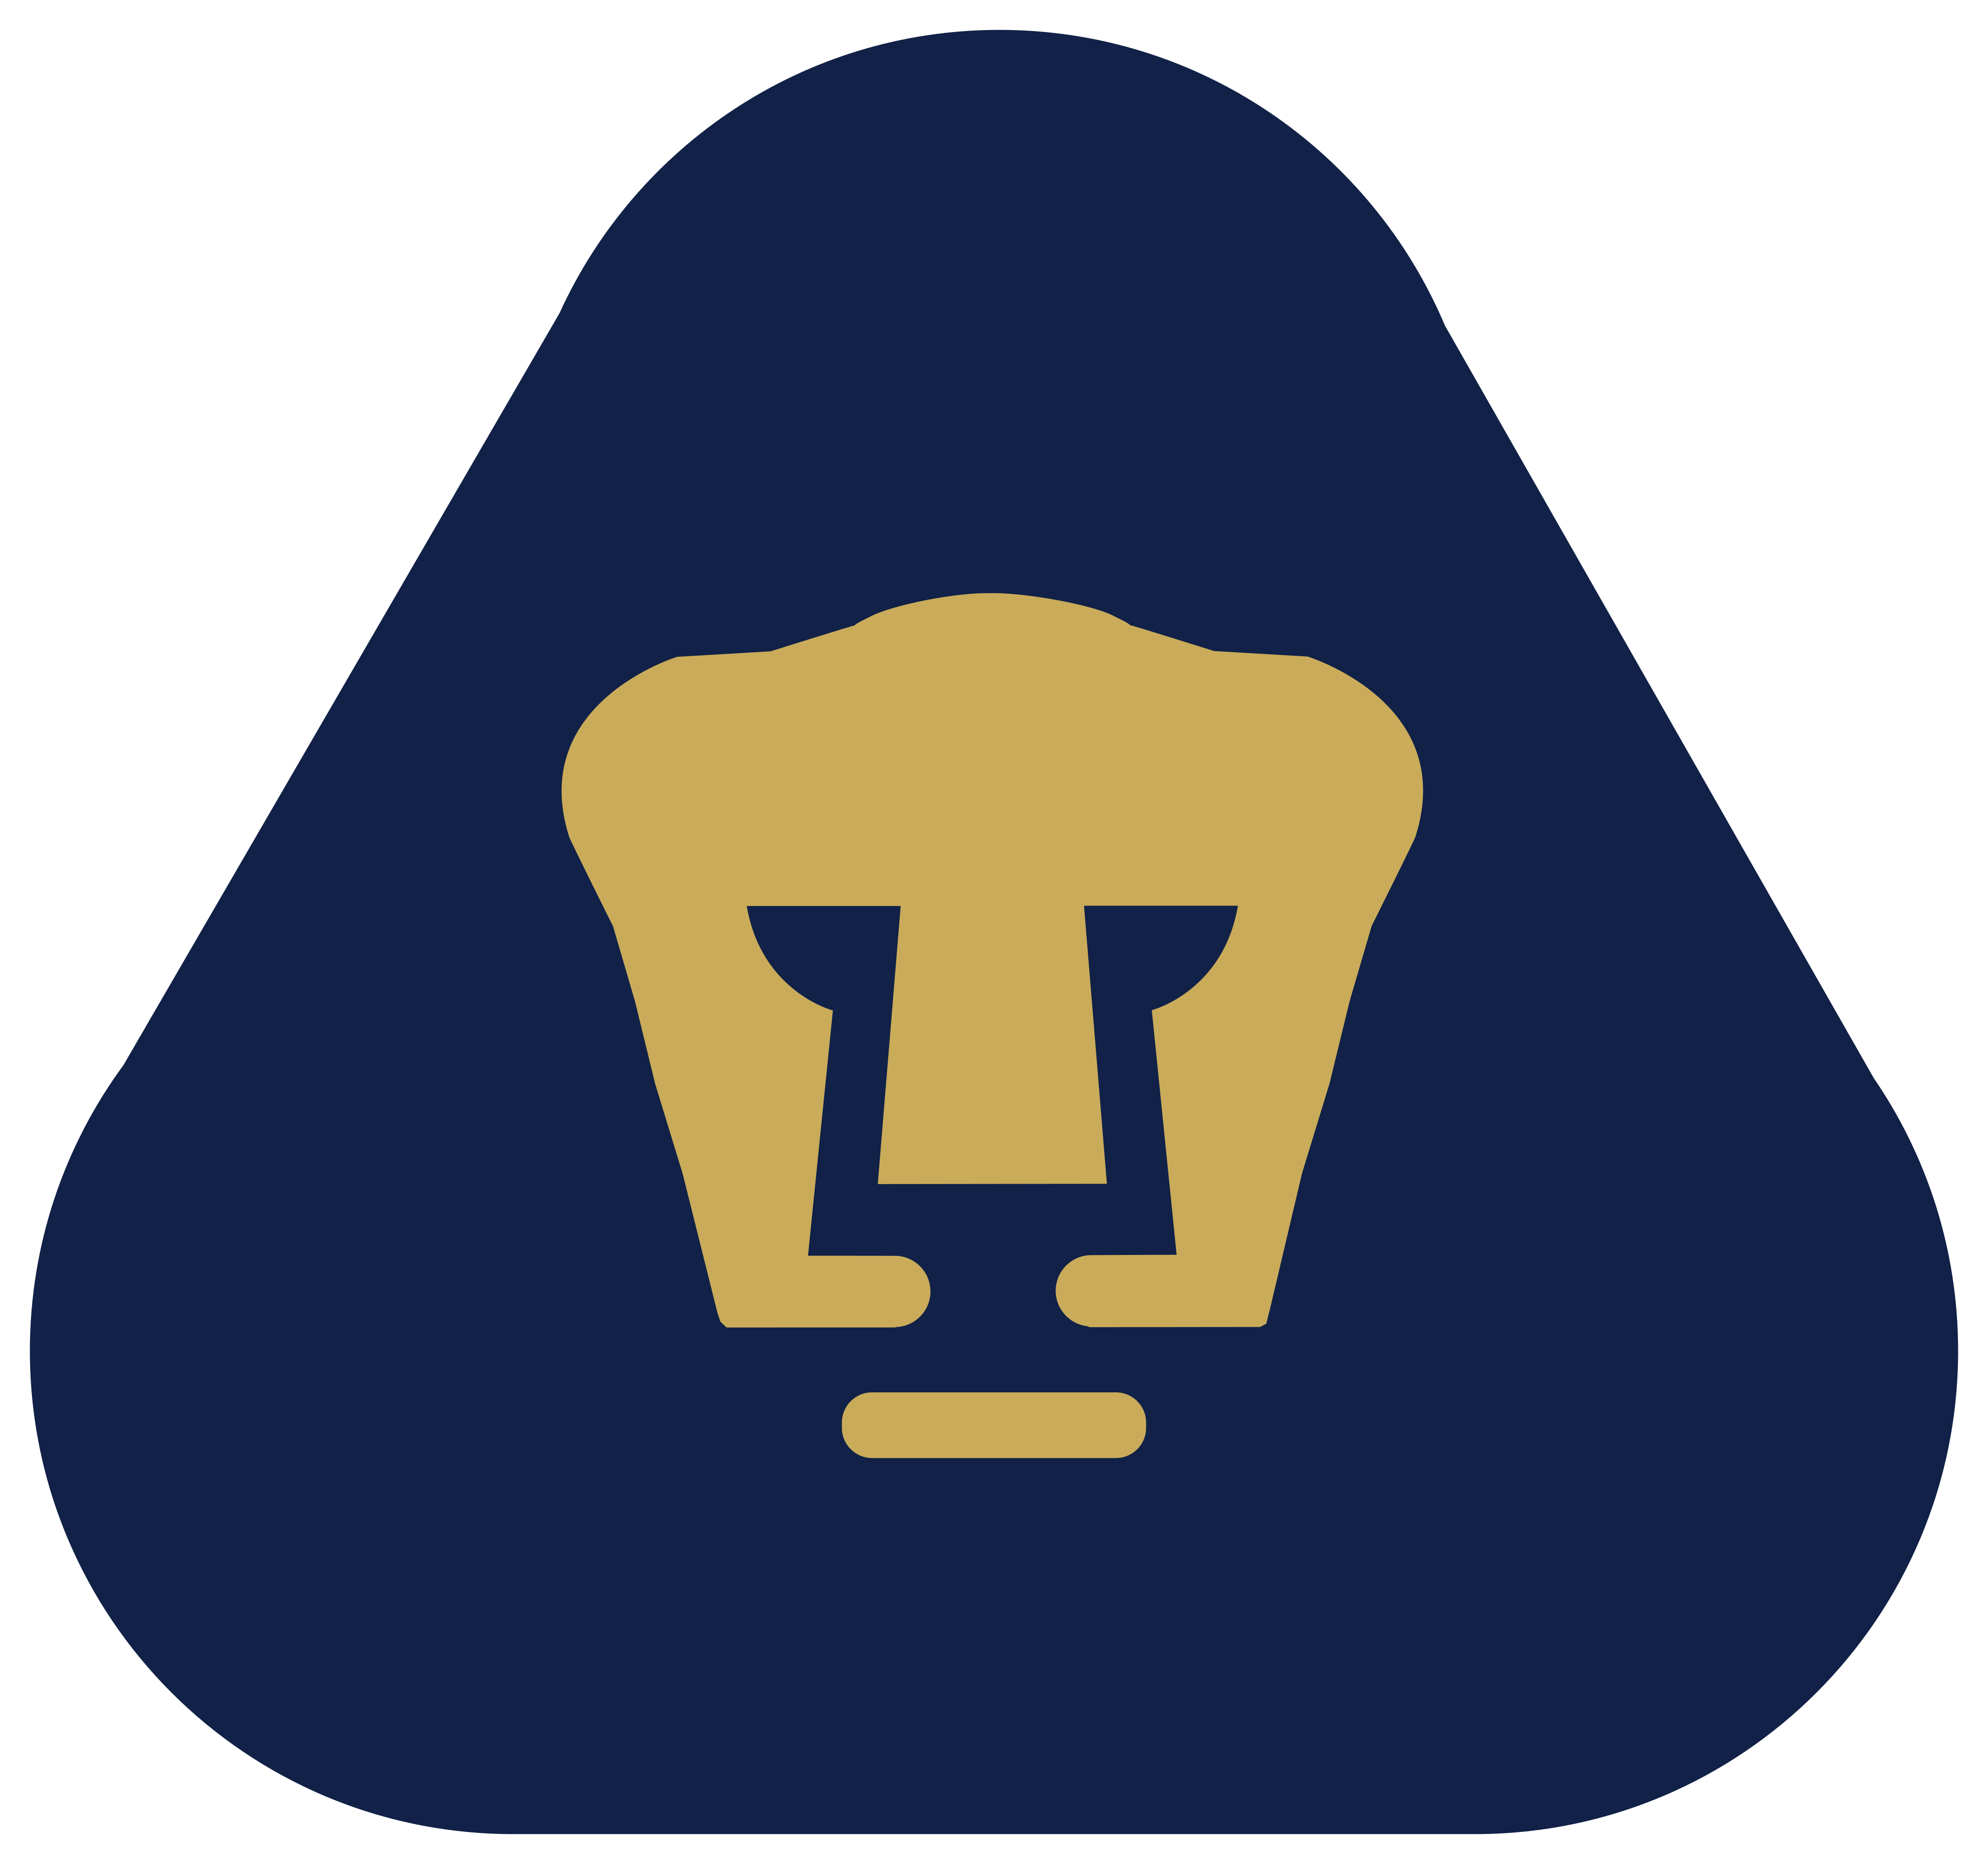 pumas unam logo 5 - Pumas UNAM Logo